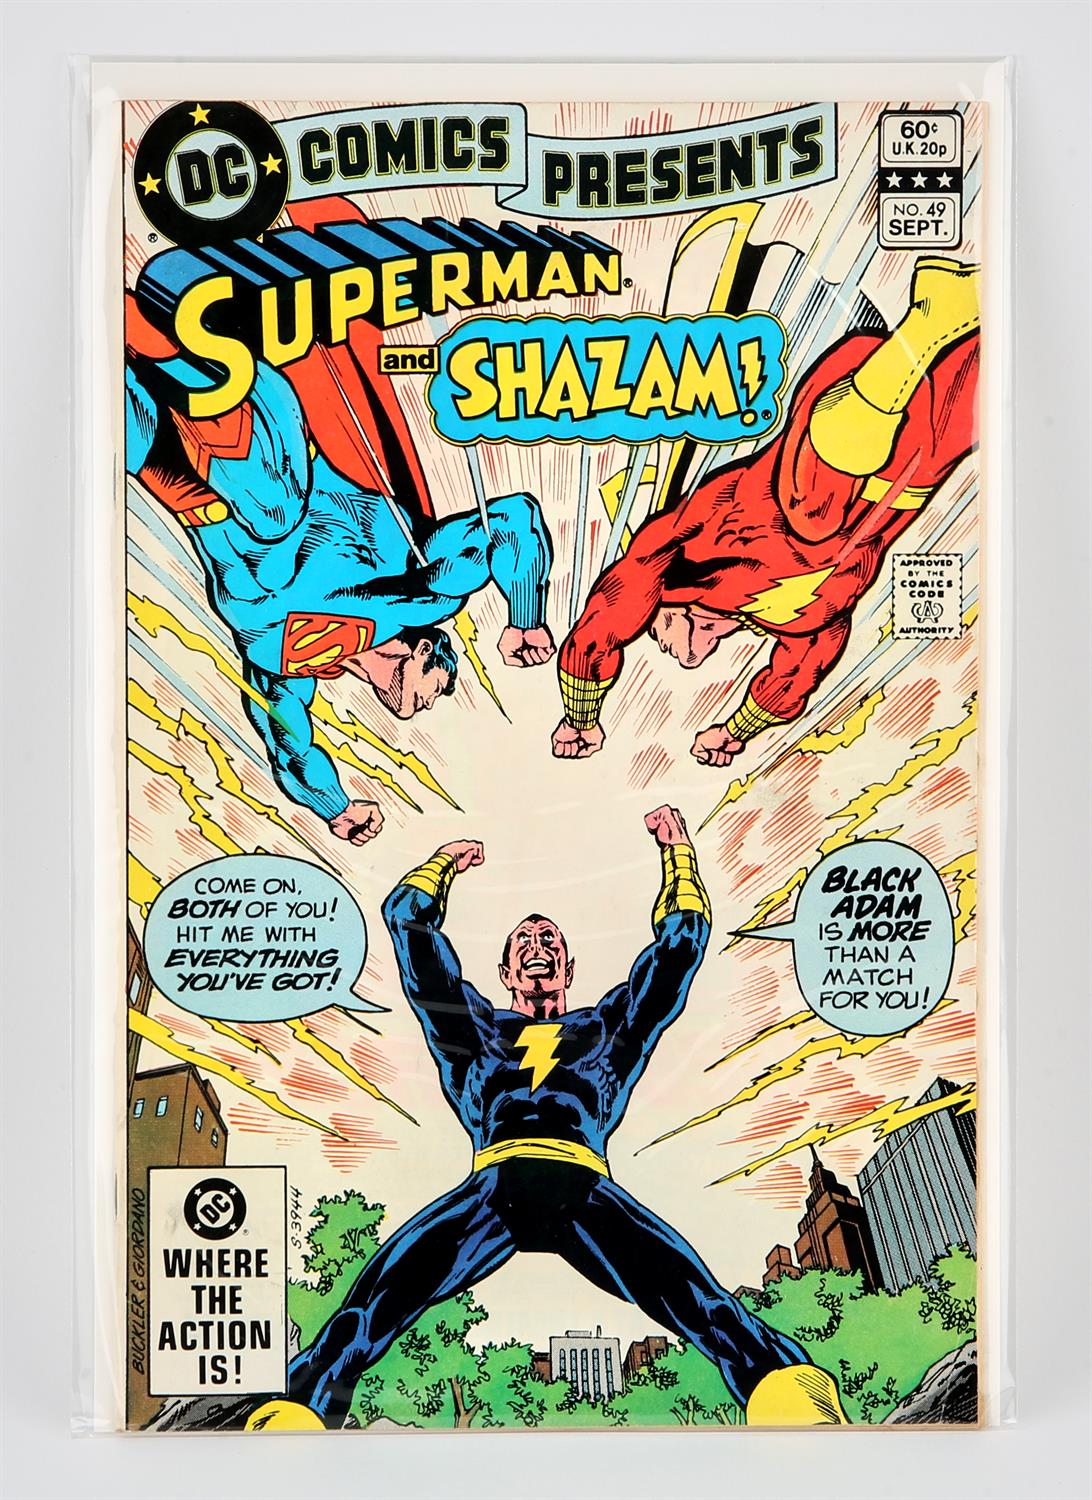 DC Comics: DC Comics Presents No. 49 featuring the 1st battle between Superman vs Black Adam (1980).